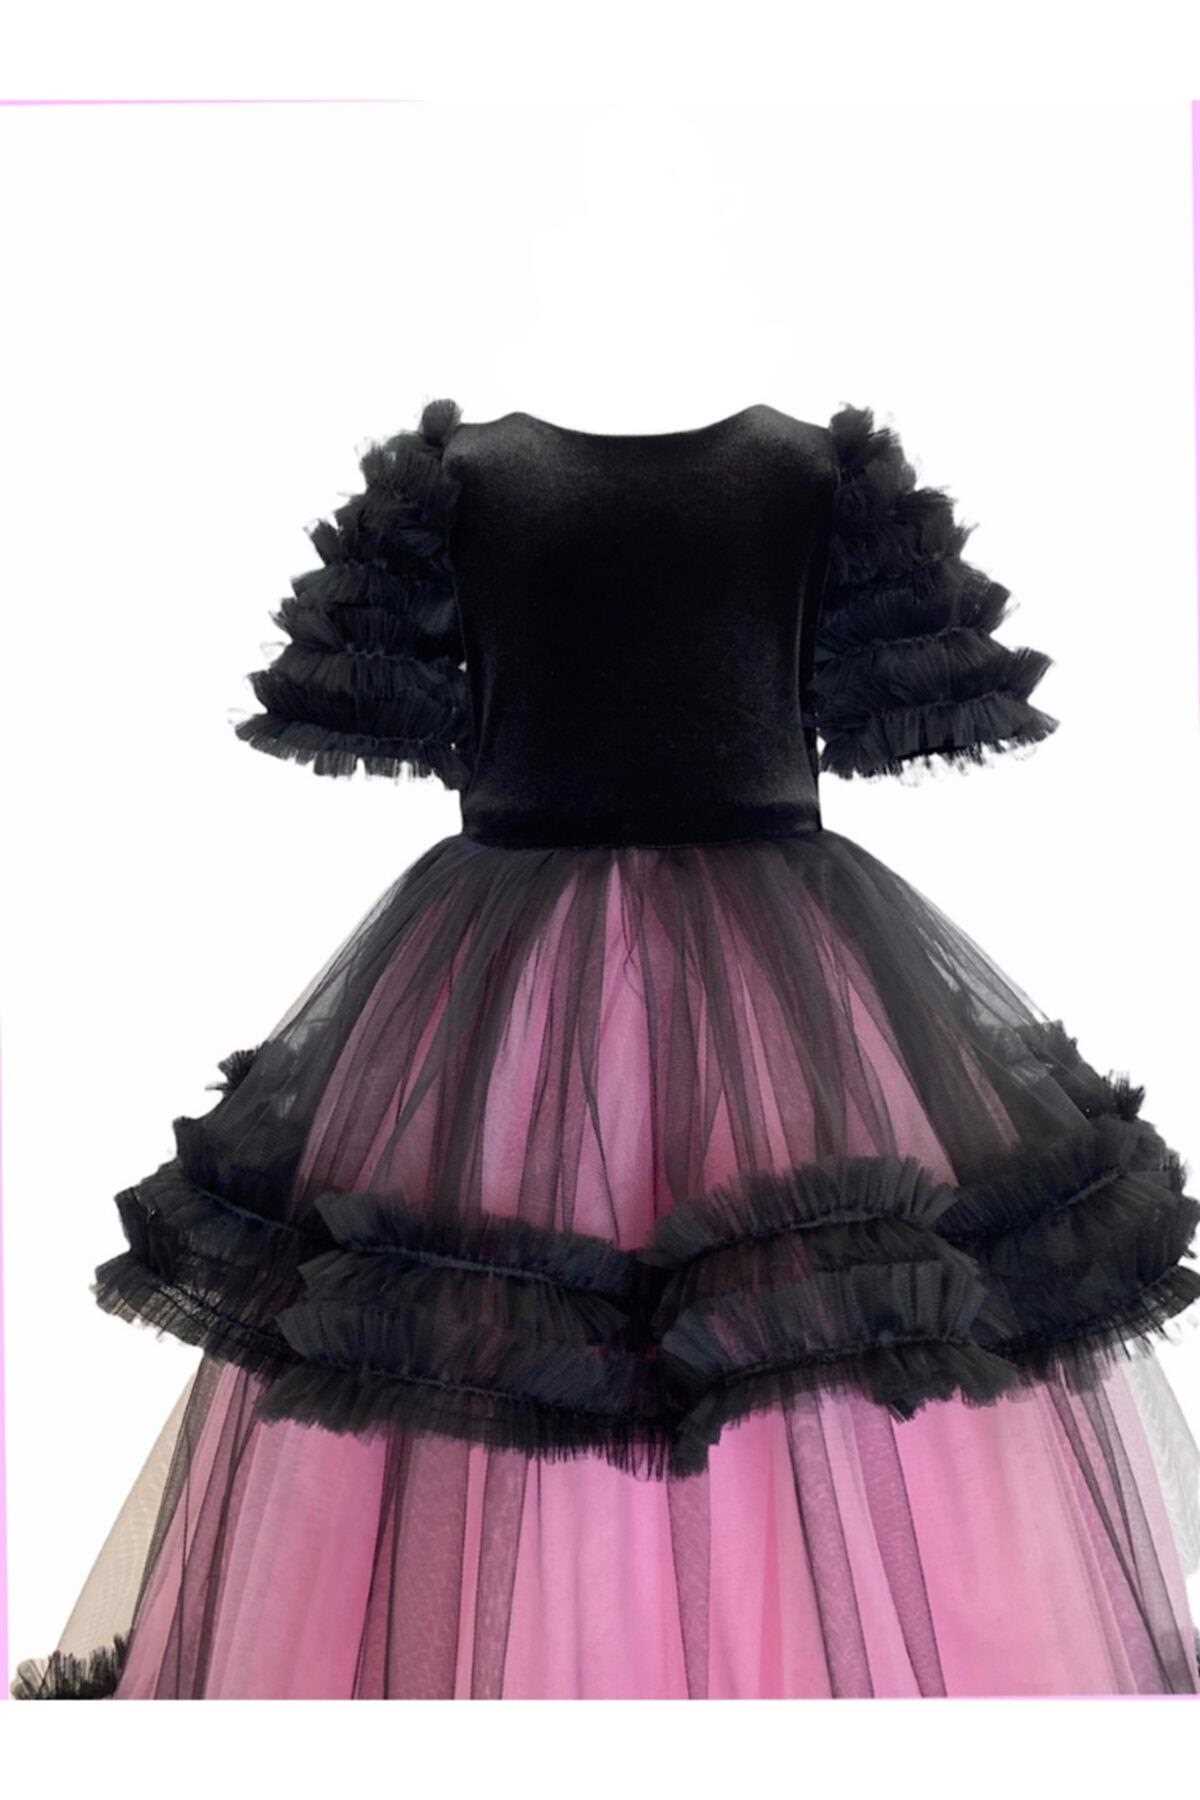 فروش لباس مجلسی دخترانه 2021 شیک zühre balaban رنگ مشکی کد ty153273525